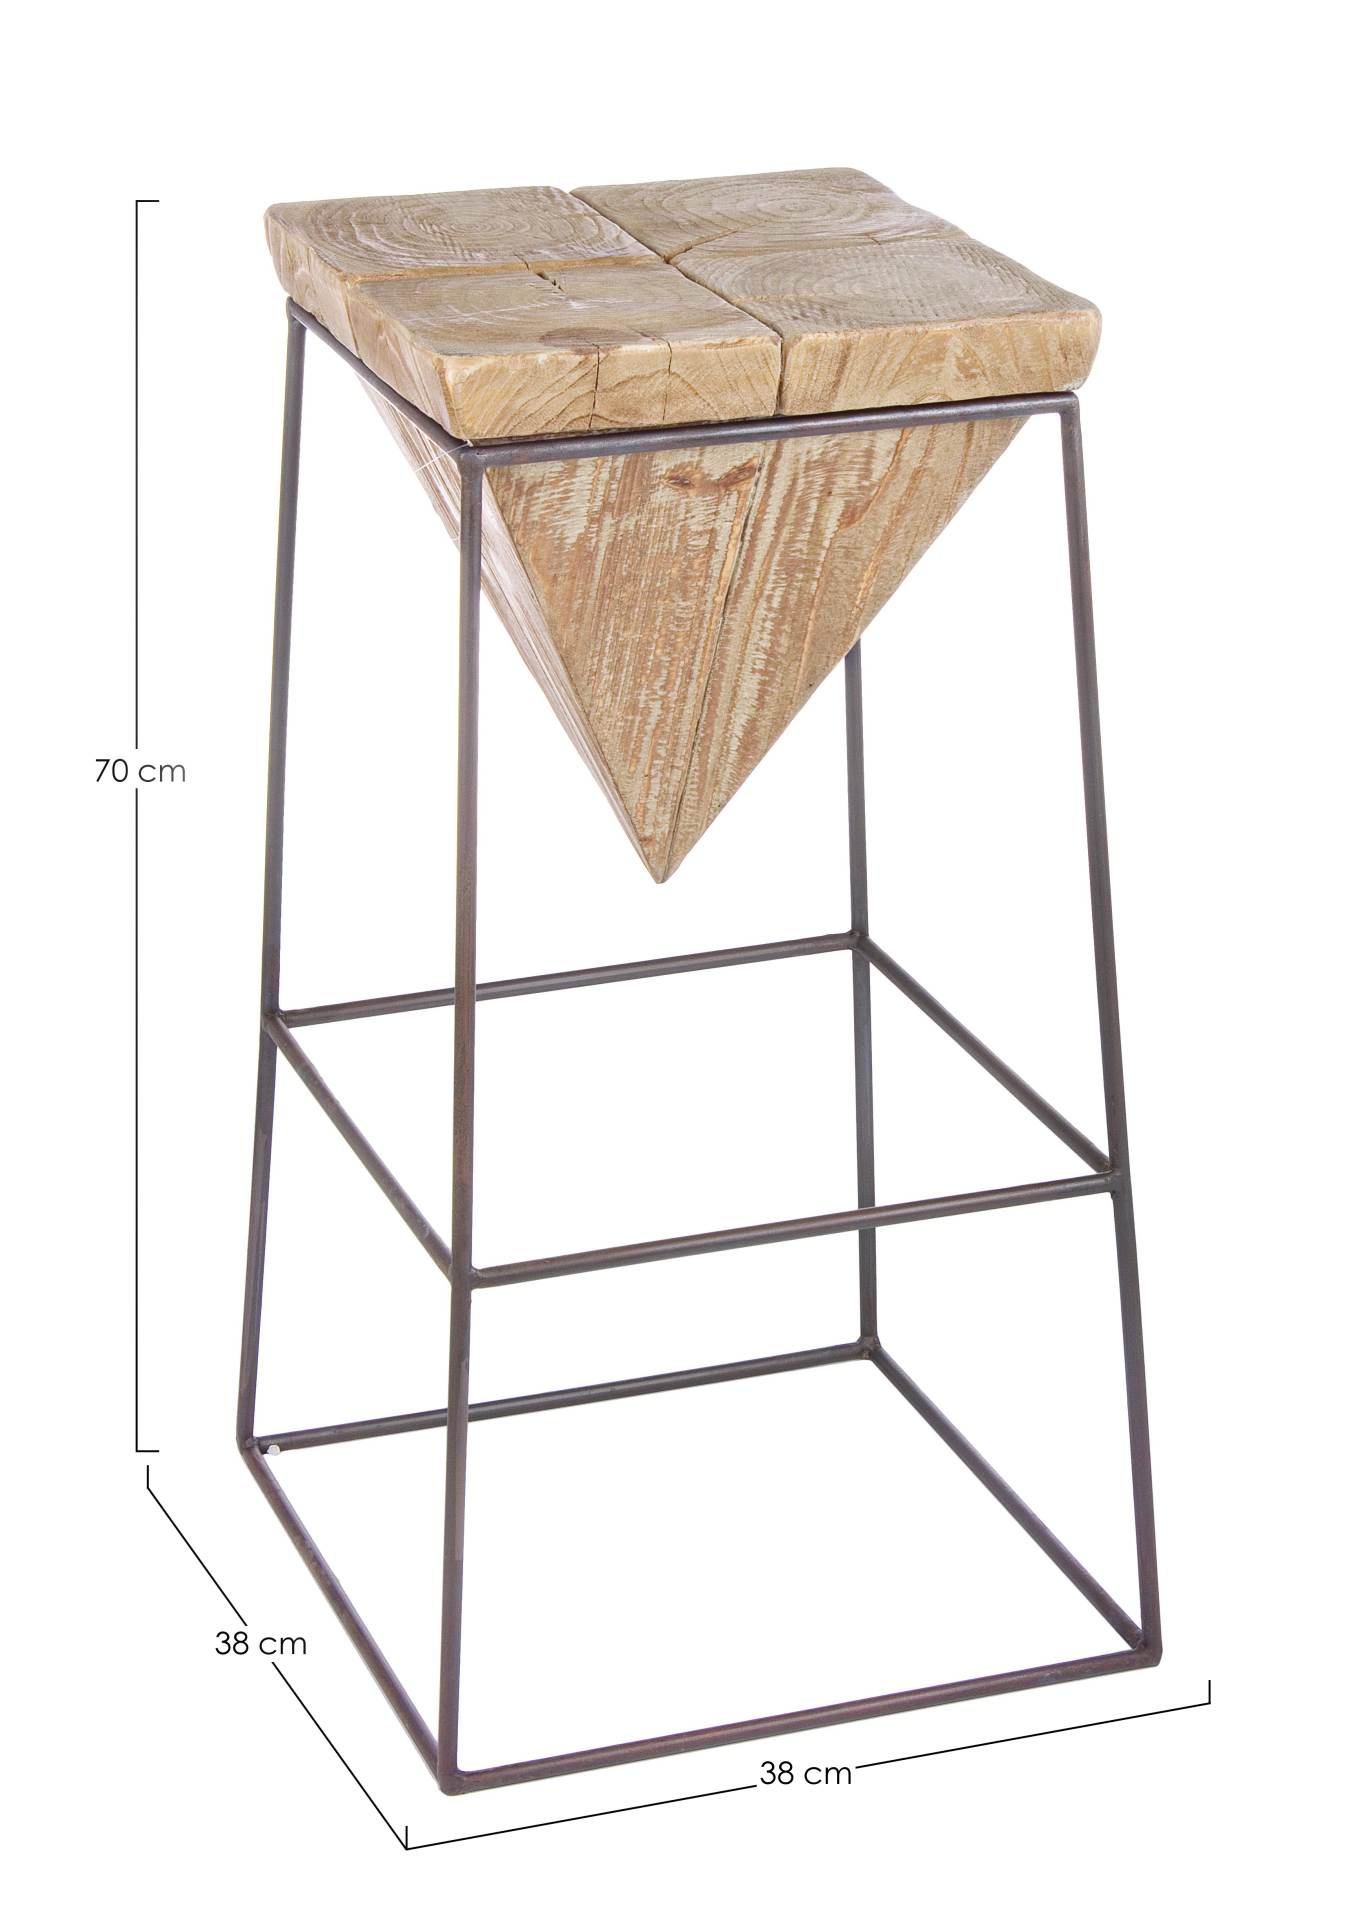 Der Barhocker Prismy überzeugt mit seinem massivem Design. Gefertigt wurde er aus Tannenholz, welches einen natürlichen Farbton besitzt. Das Gestell ist aus Metall und hat eine Anthrazit Farbe. Die Sitzhöhe beträgt 70 cm.